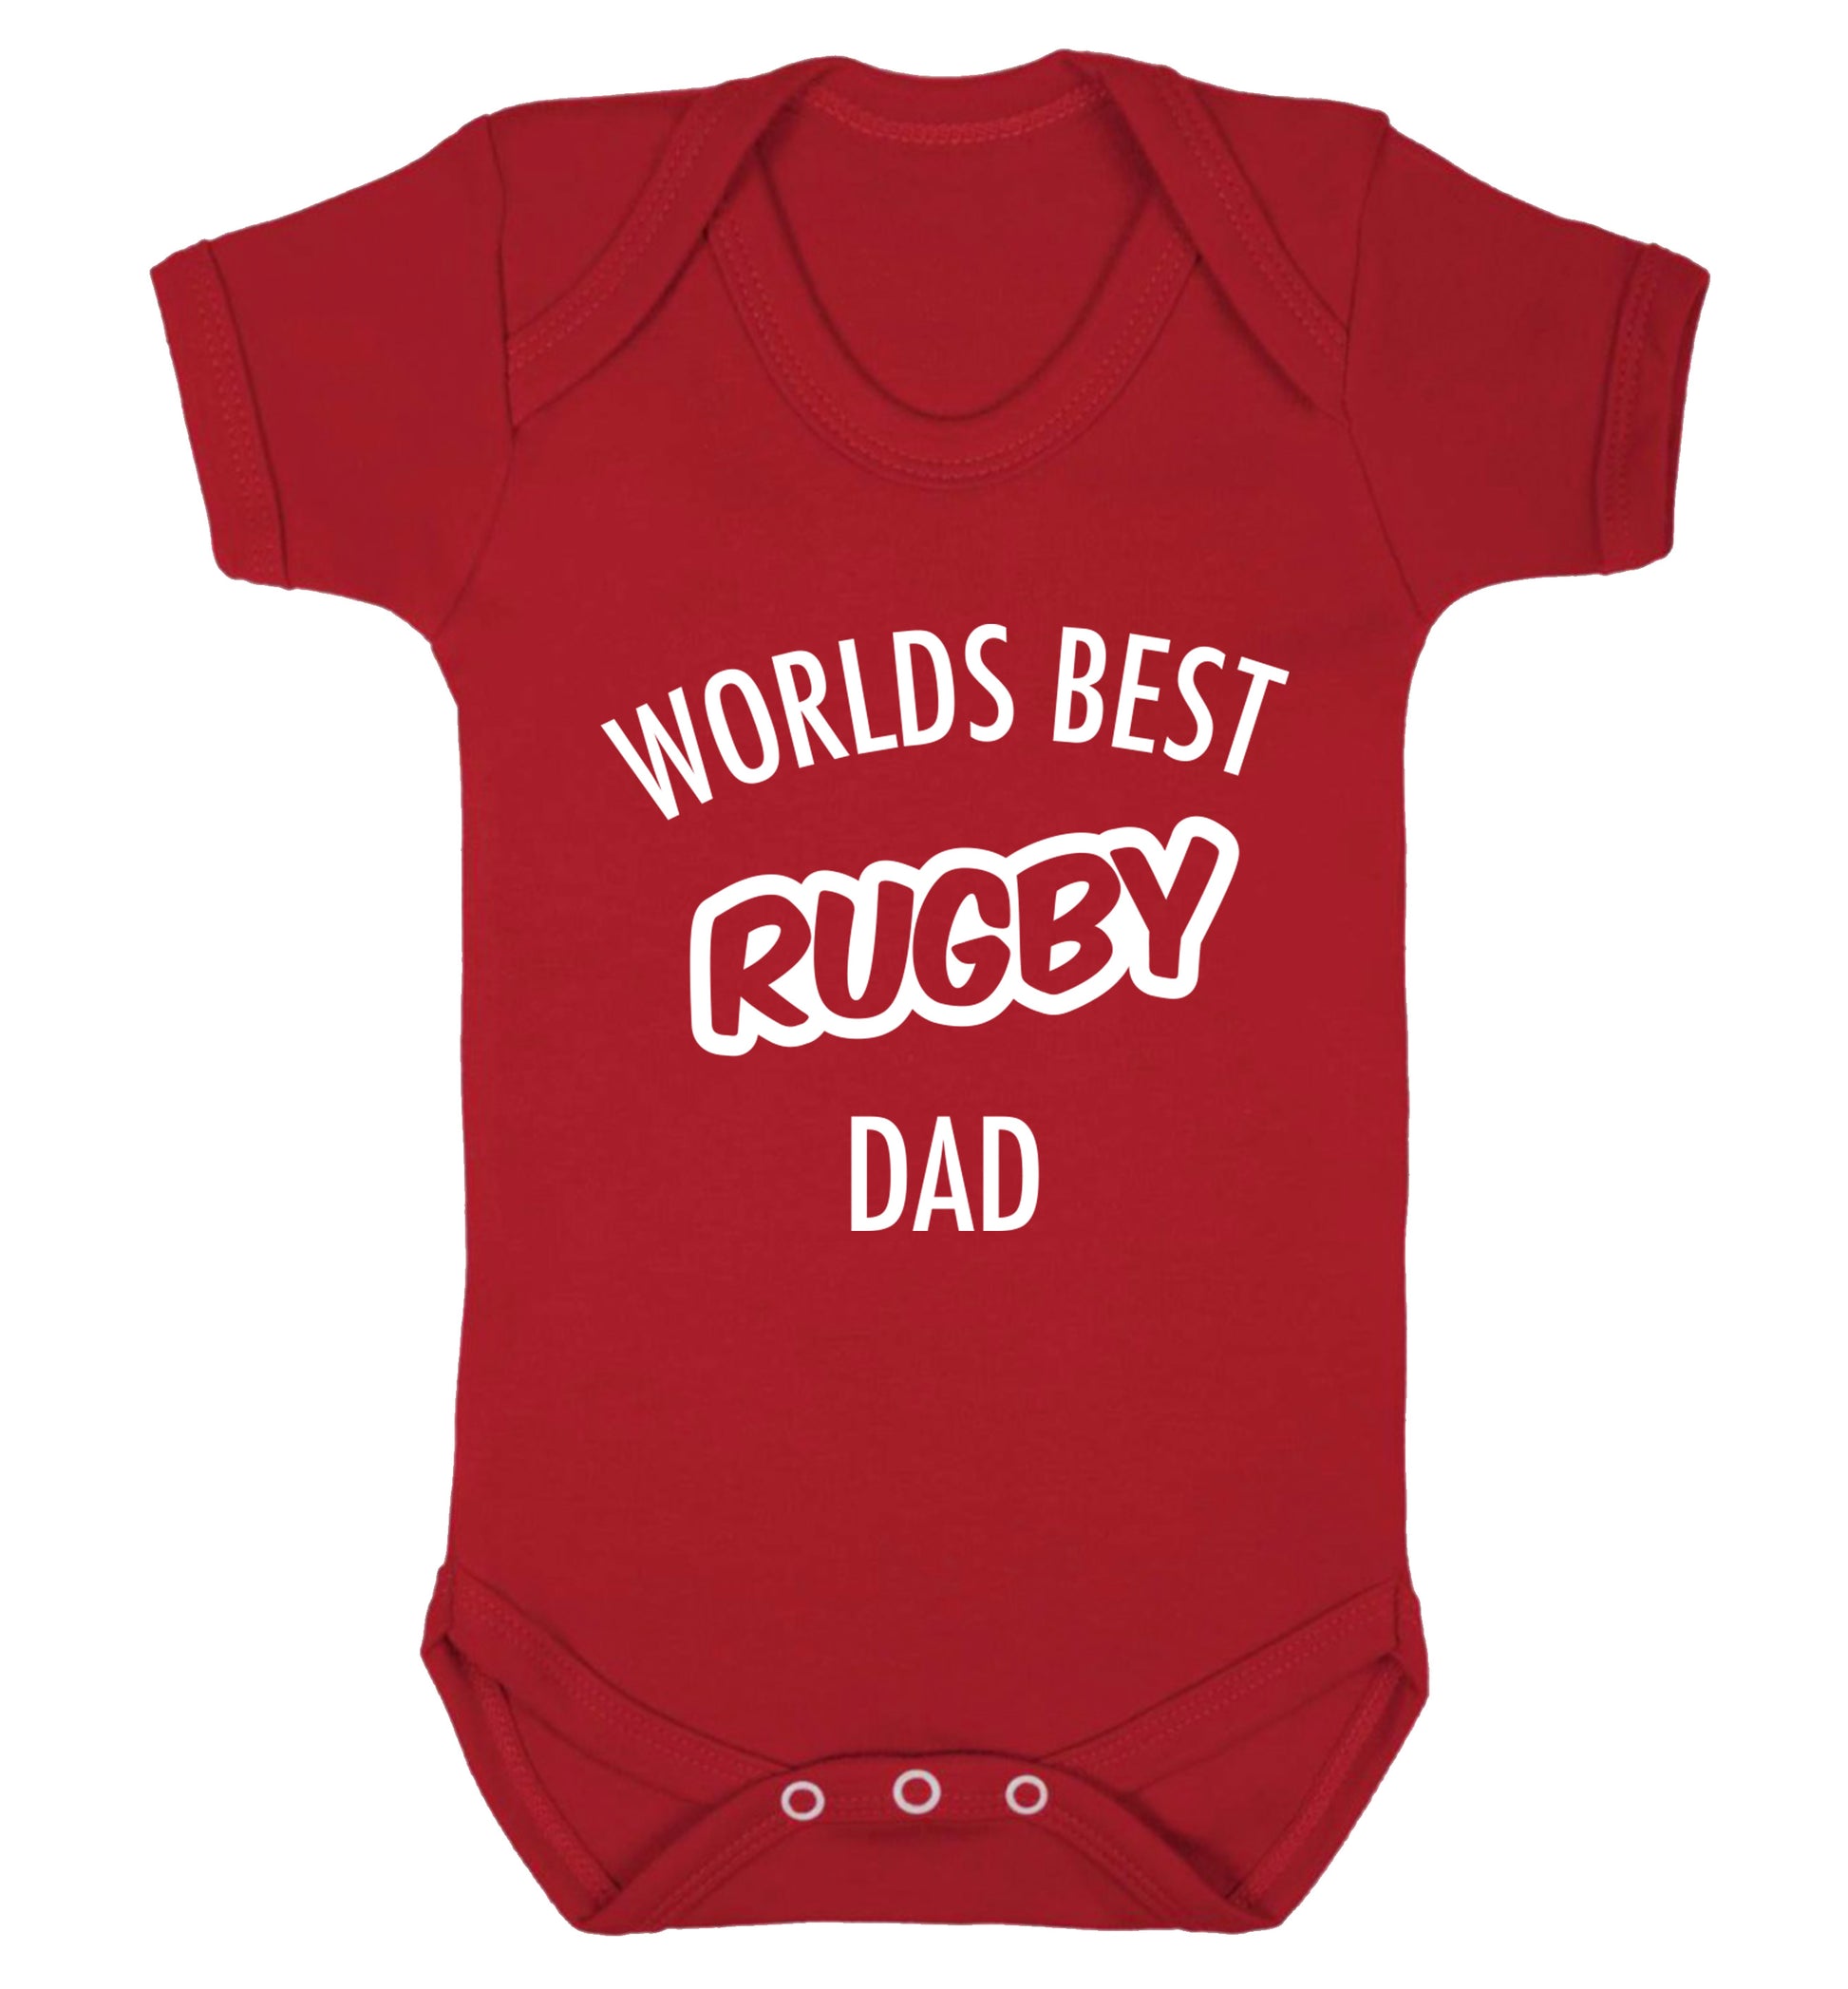 Worlds best rugby dad Baby Vest red 18-24 months